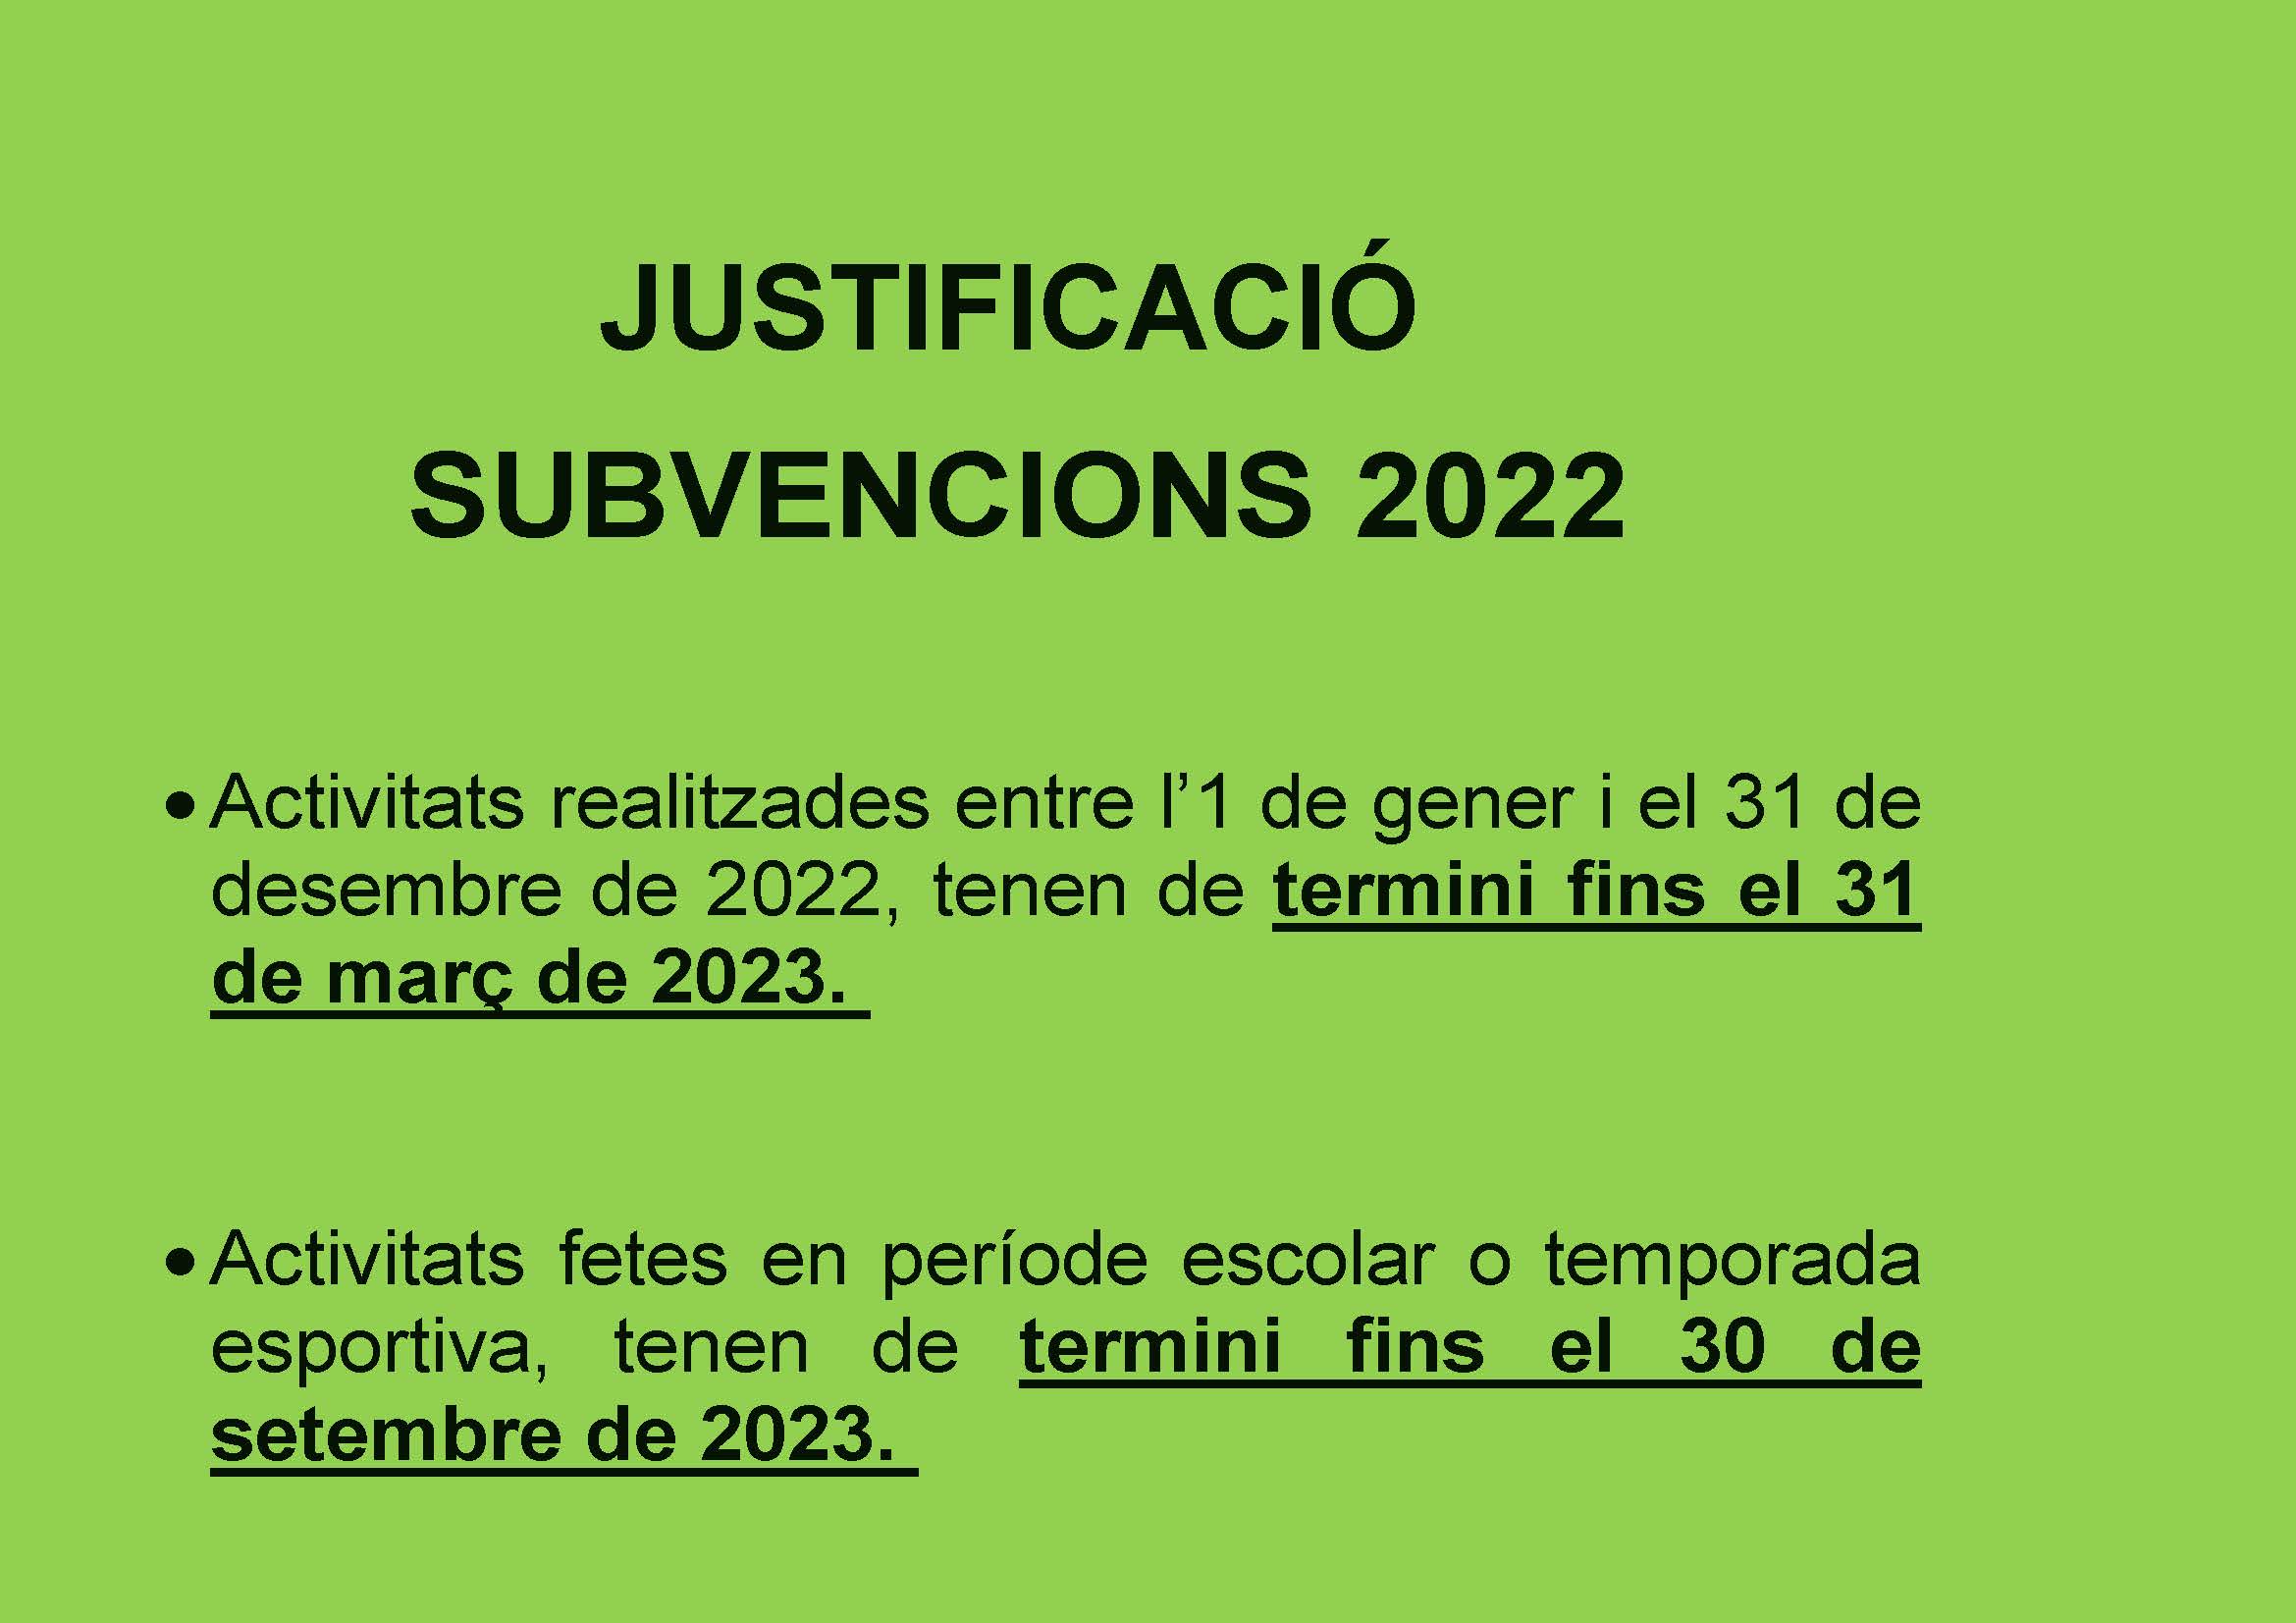 Justificació subvencions atorgades al teixit associatiu execici 2022